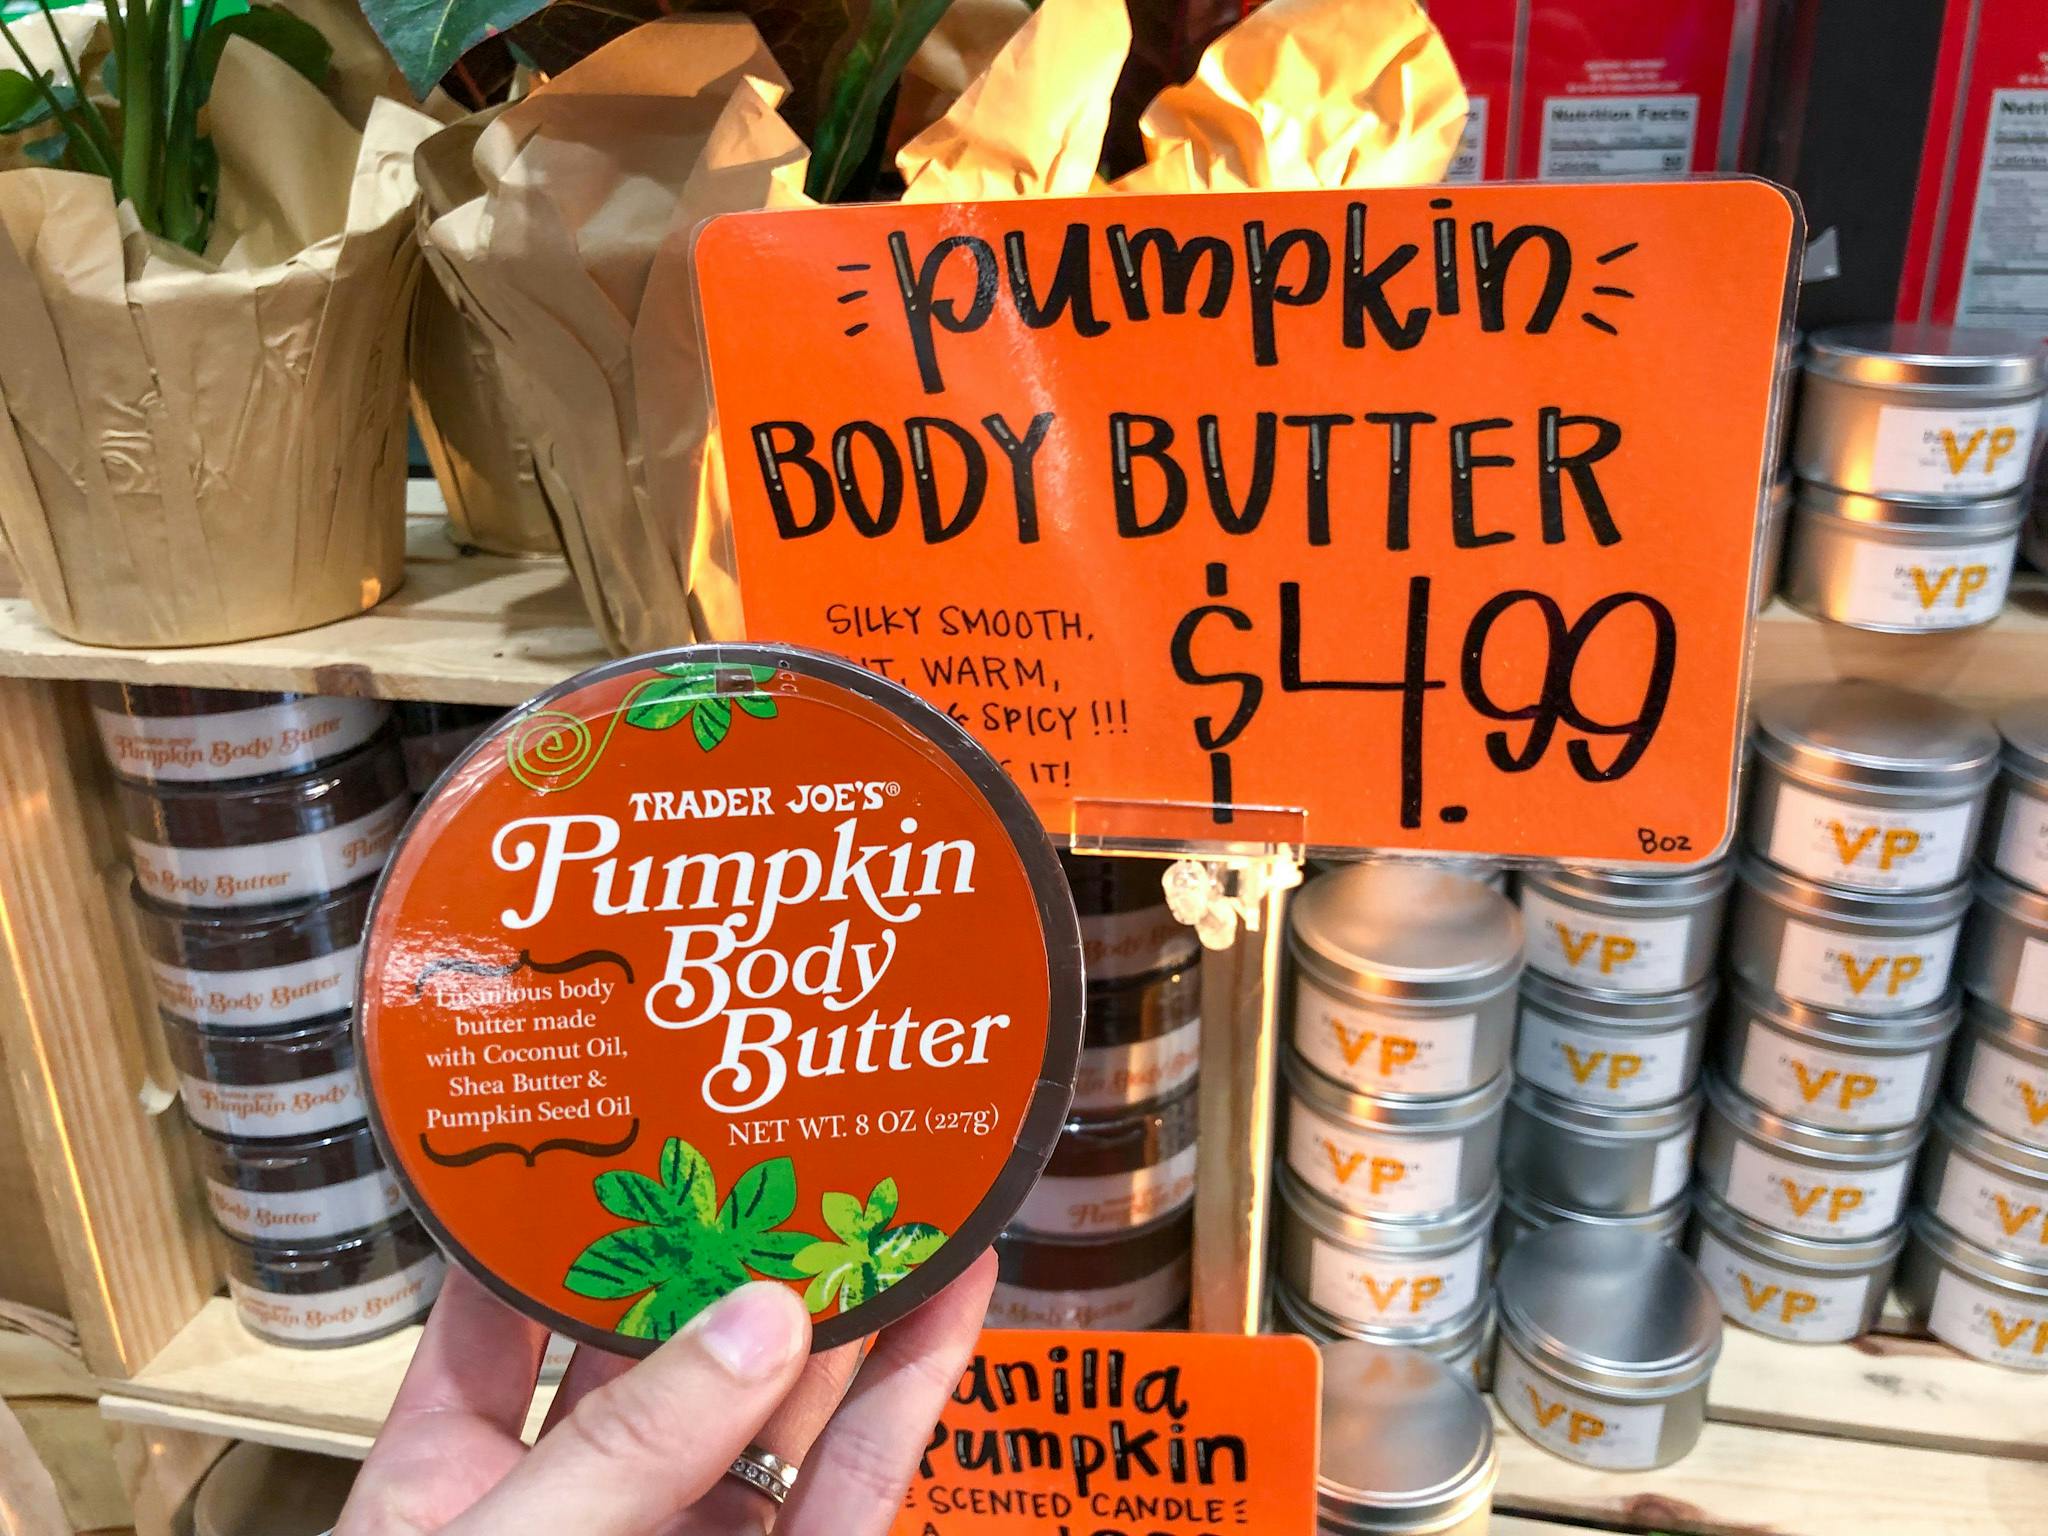 Trader Joe's pumpkin body butter on the shelf.